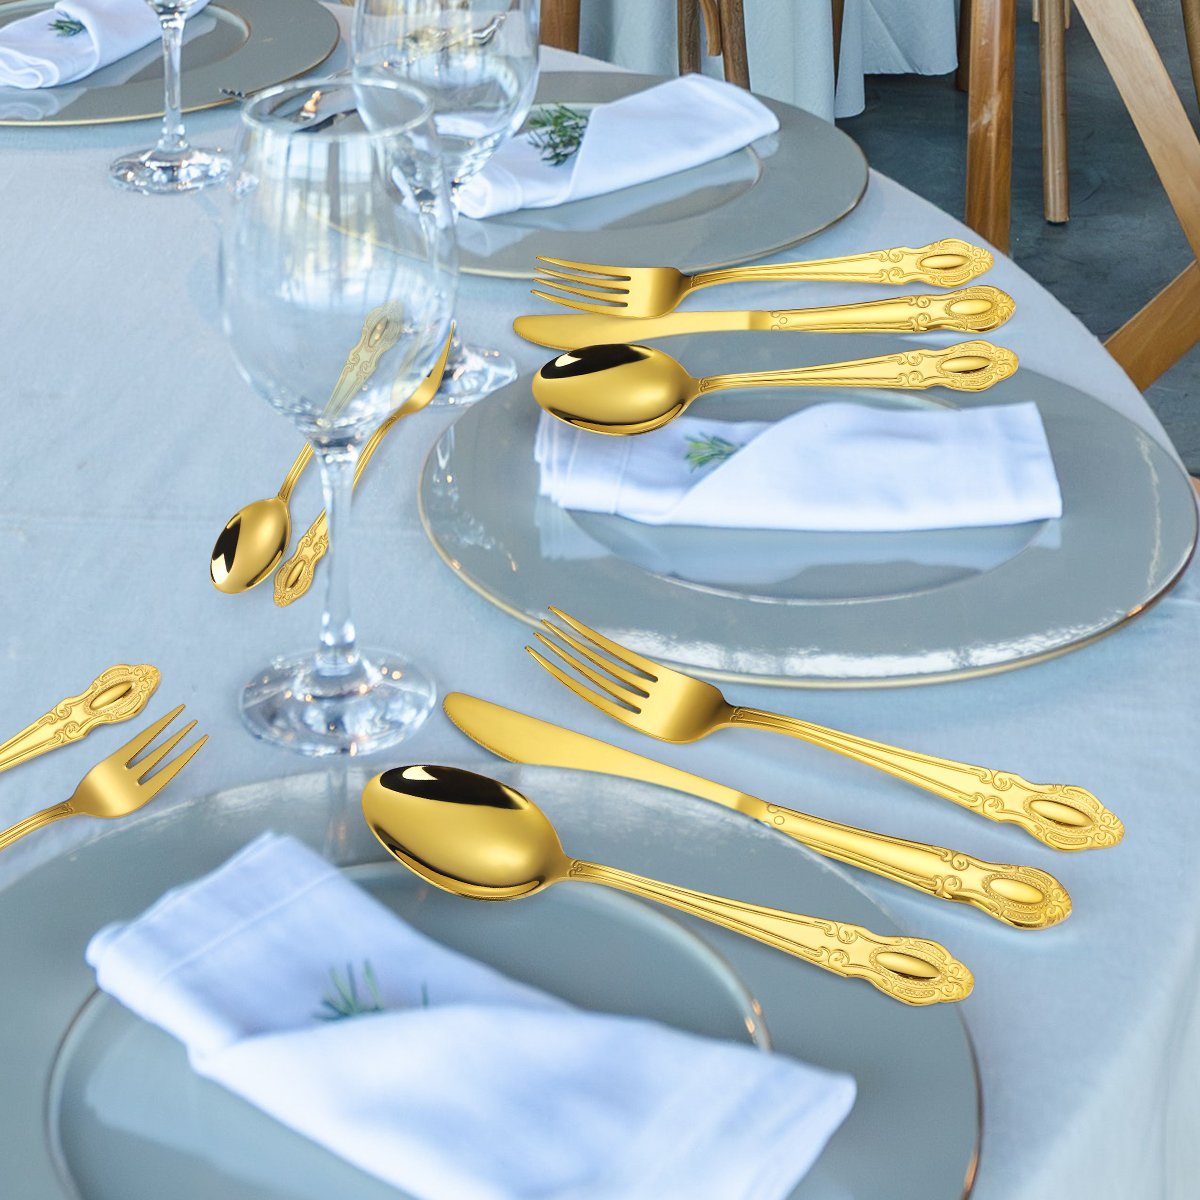 Home safety Besteck-Set 40teilig Luxury Royal Set Personen poliert Gold 8 glänzend Elegant Besteck